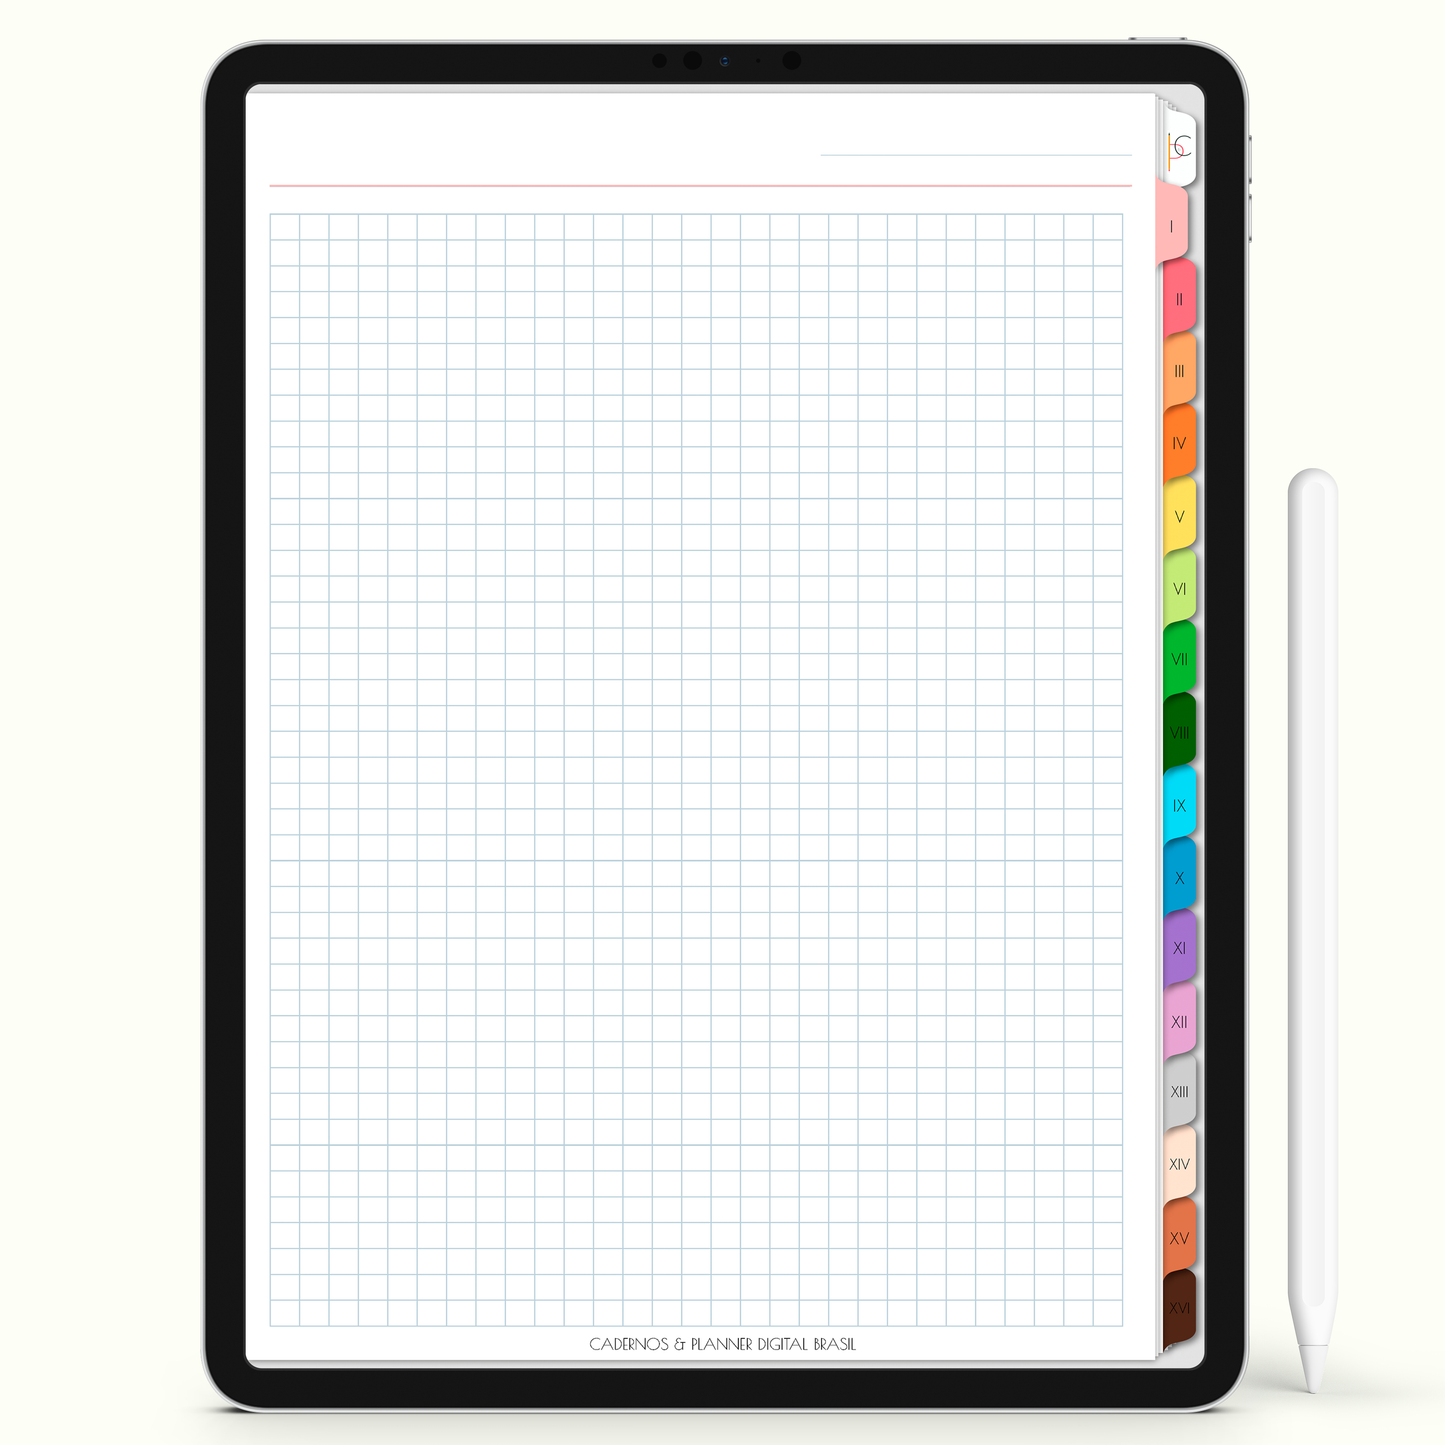 Caderno Digital Colors 16 Matérias - página Quadriculada para iPad e Tablet Android. Cadernos & Planner Digital Brasil